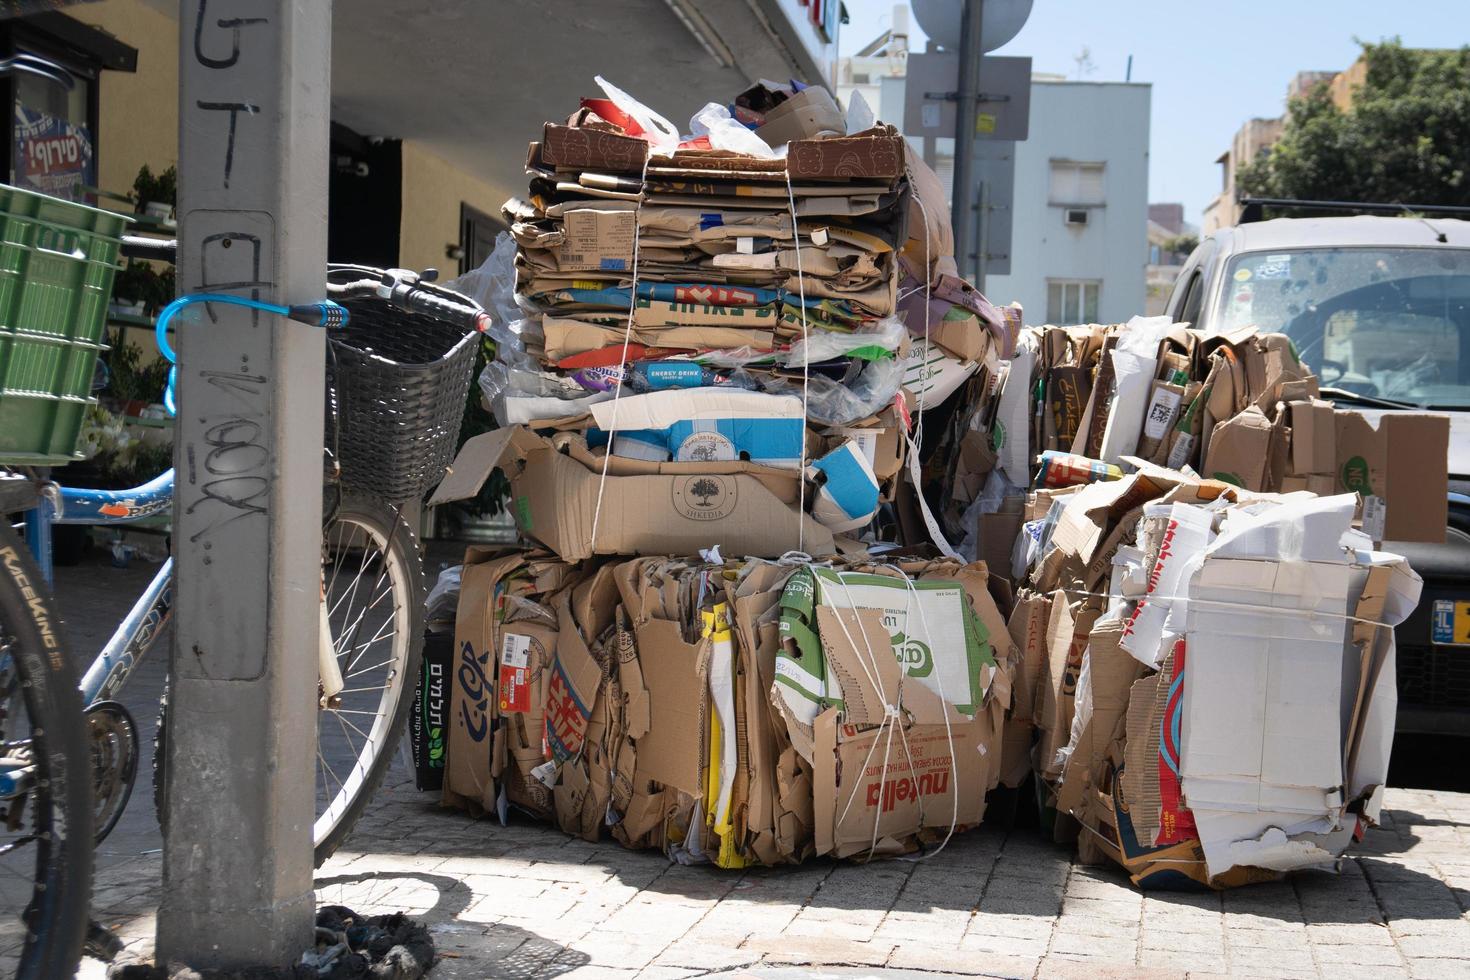 tel aviv, israël, 8 mai 2022. carton usagé compressé collecté en piles pour être recyclé et réutilisé dans la rue tel-aviv. photo